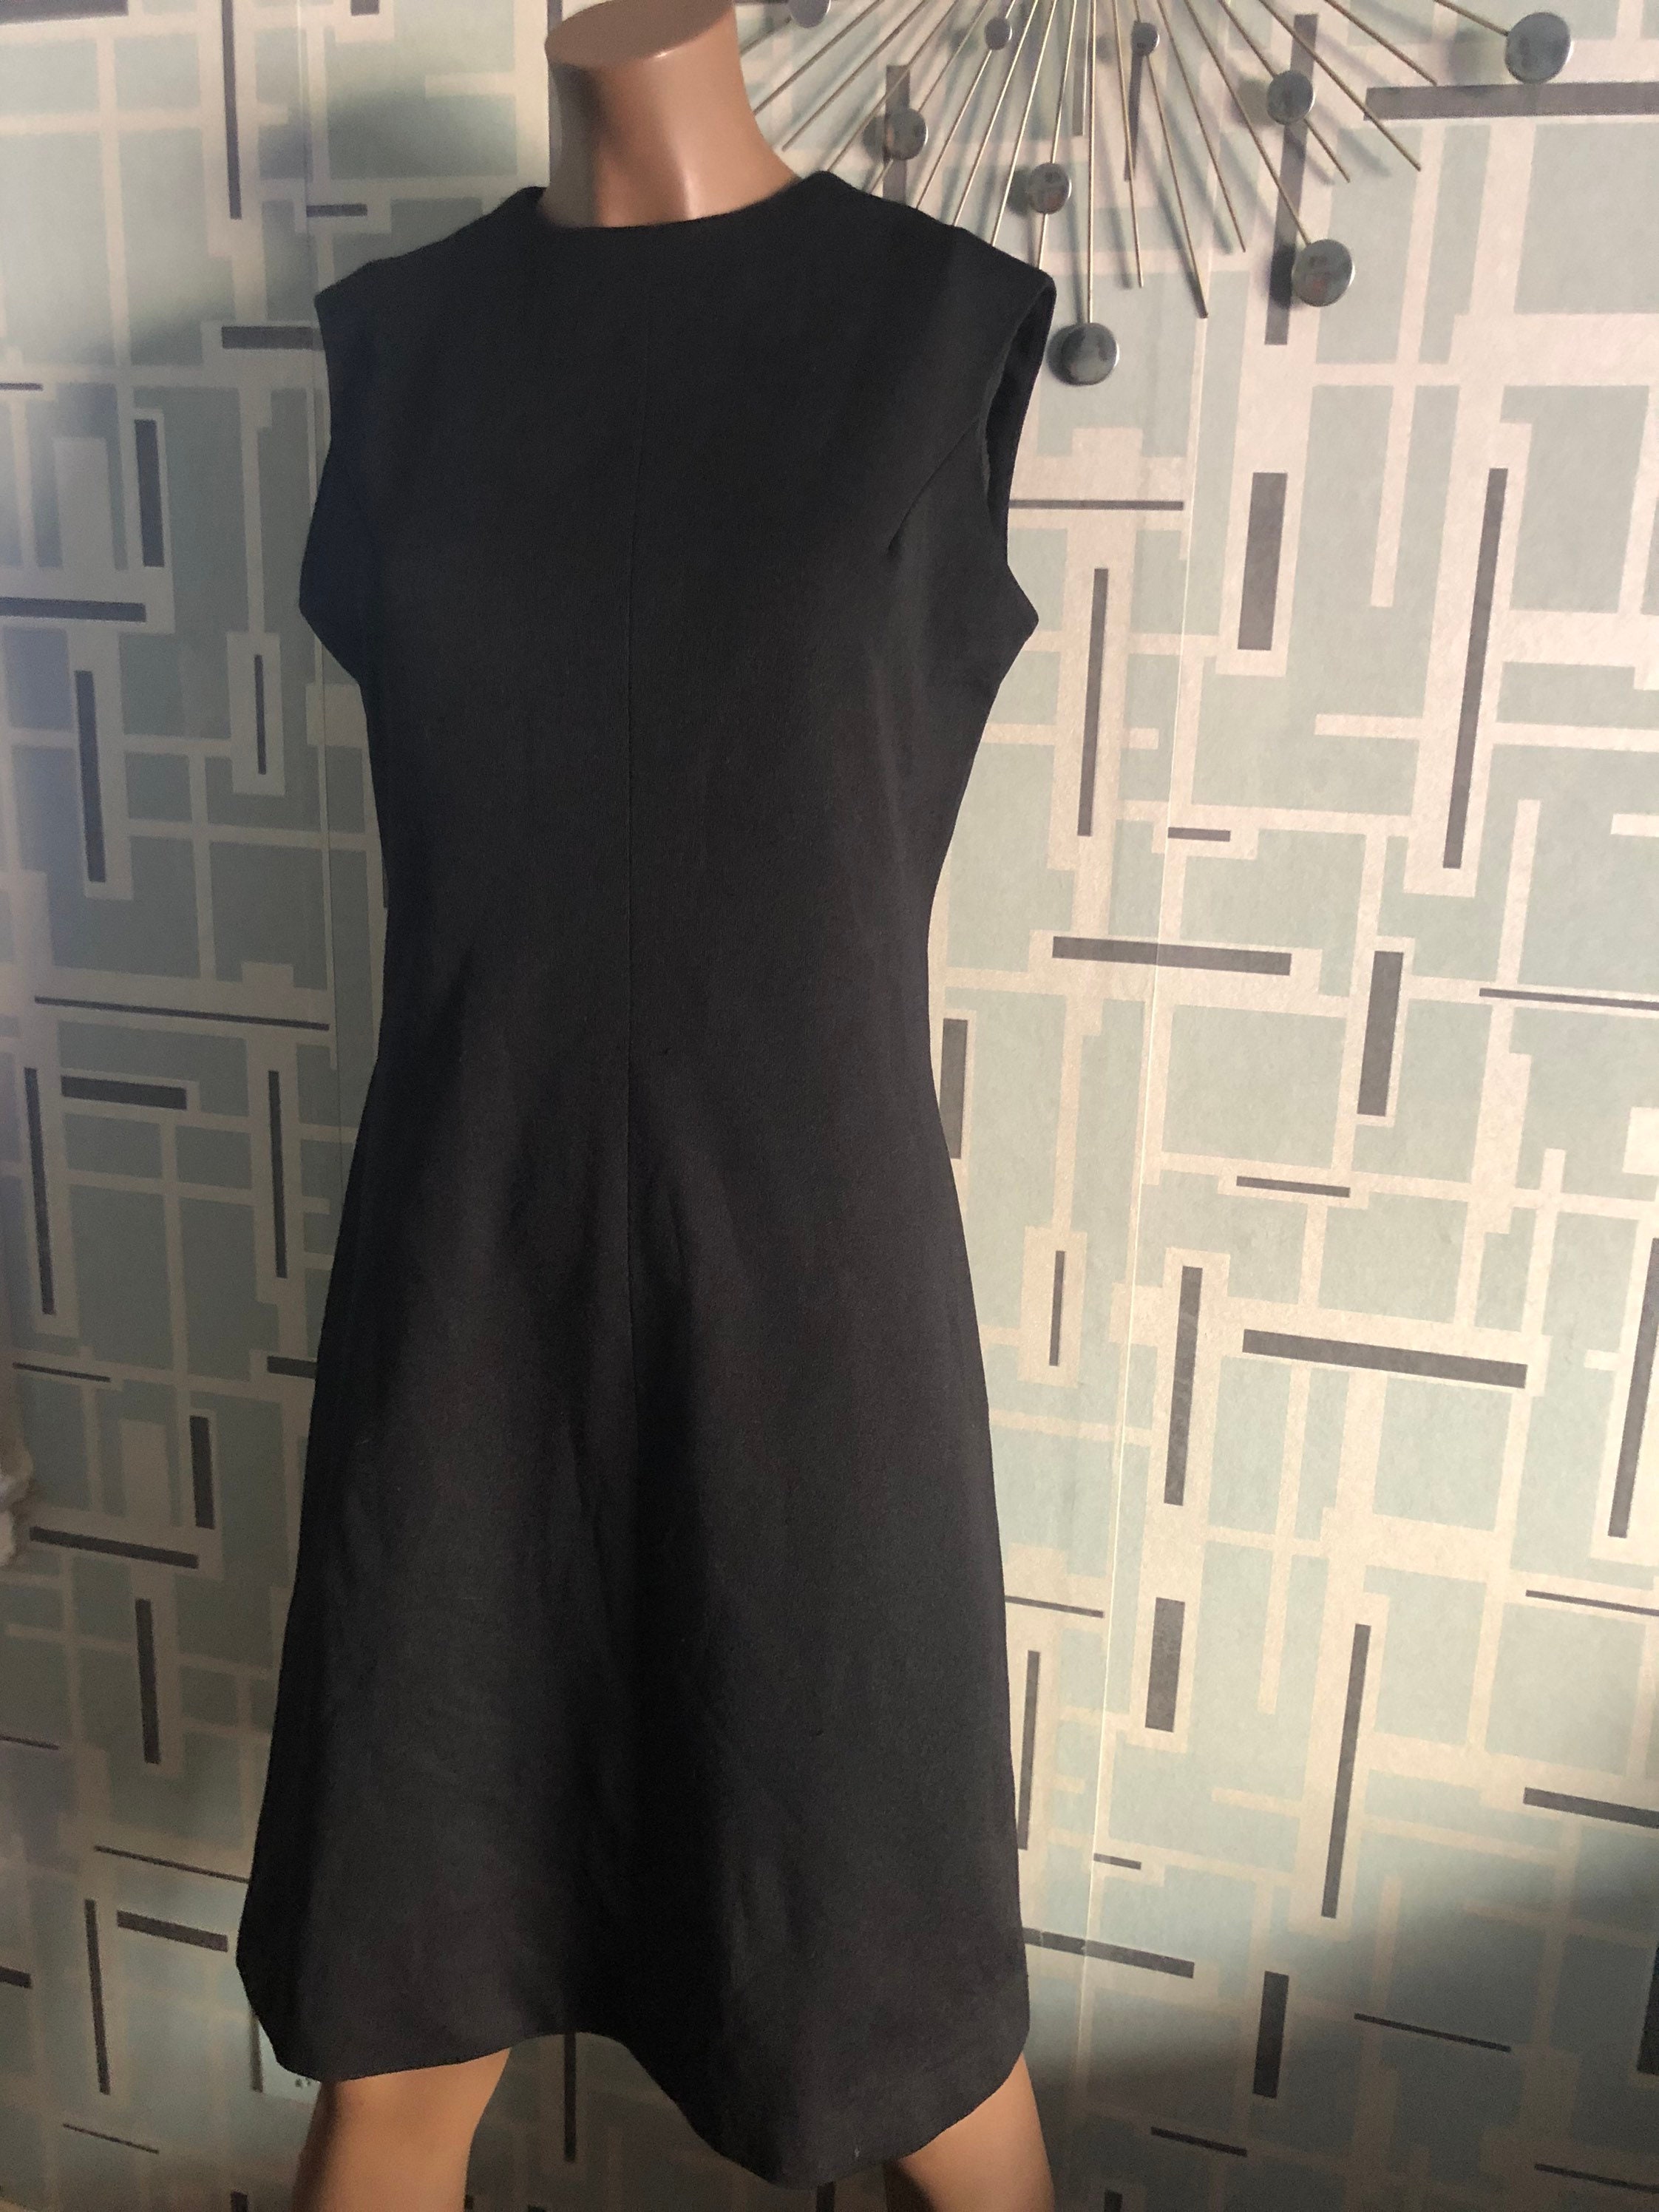 Vintage Little Black Dress | Etsy